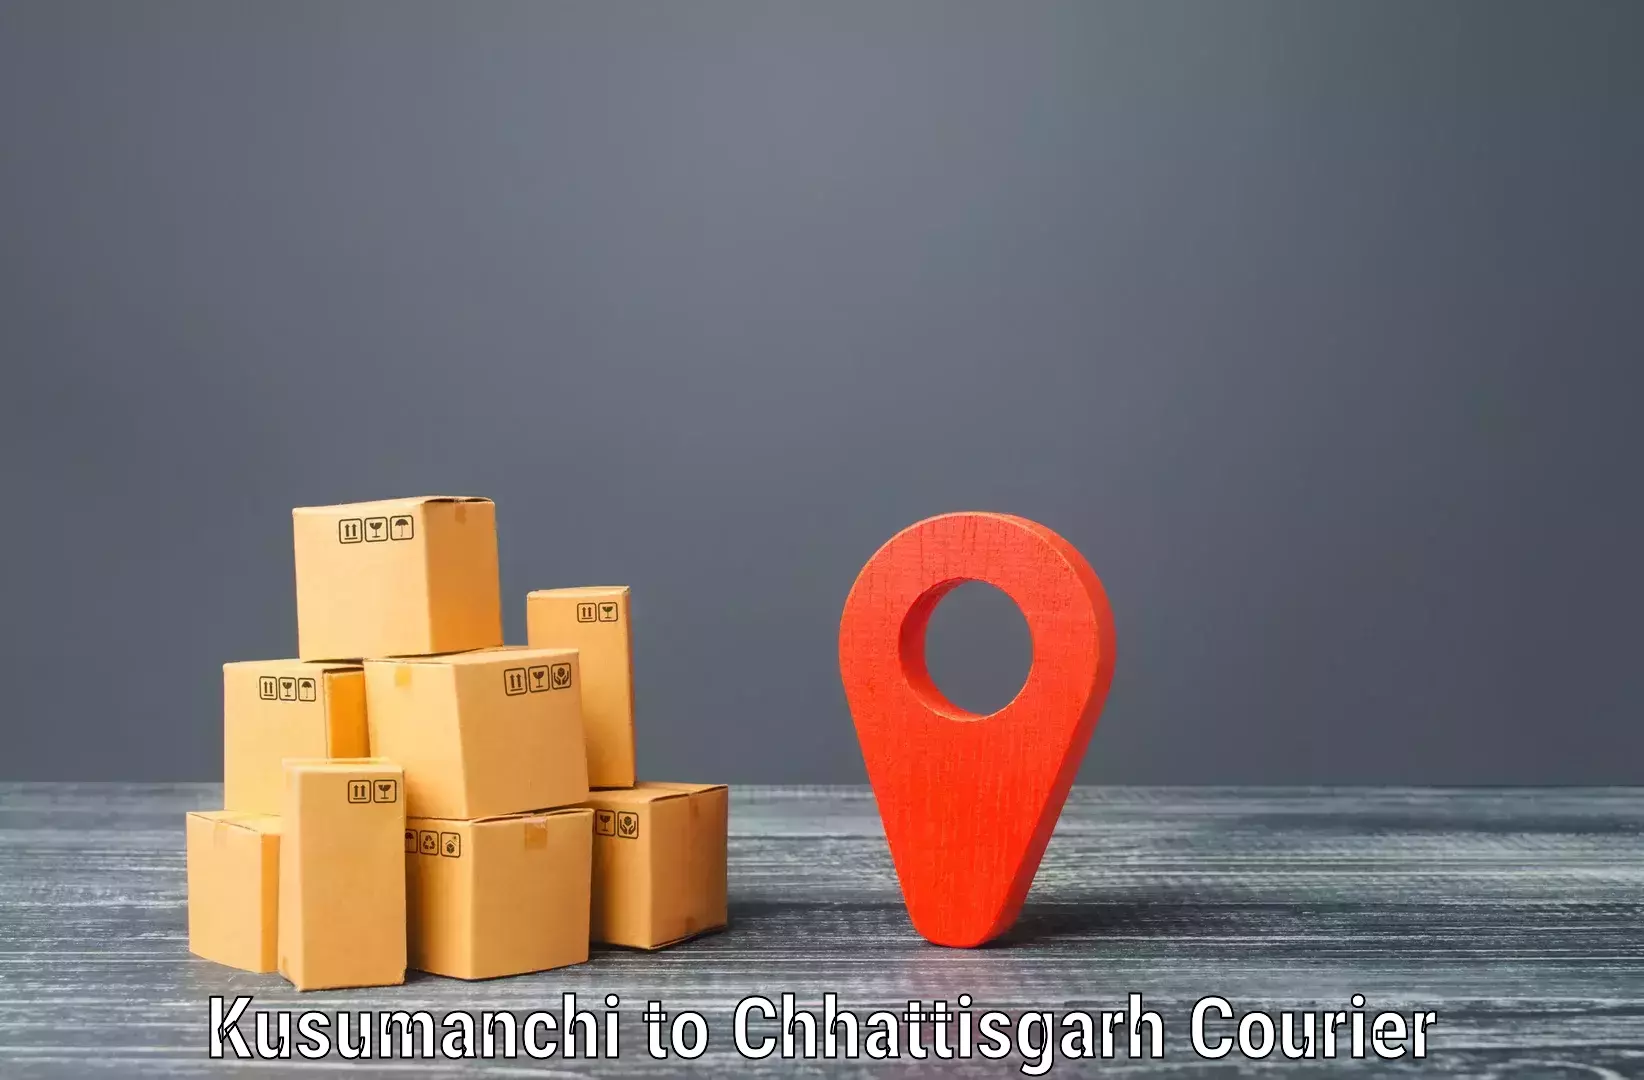 Customizable shipping options Kusumanchi to Bijapur Chhattisgarh